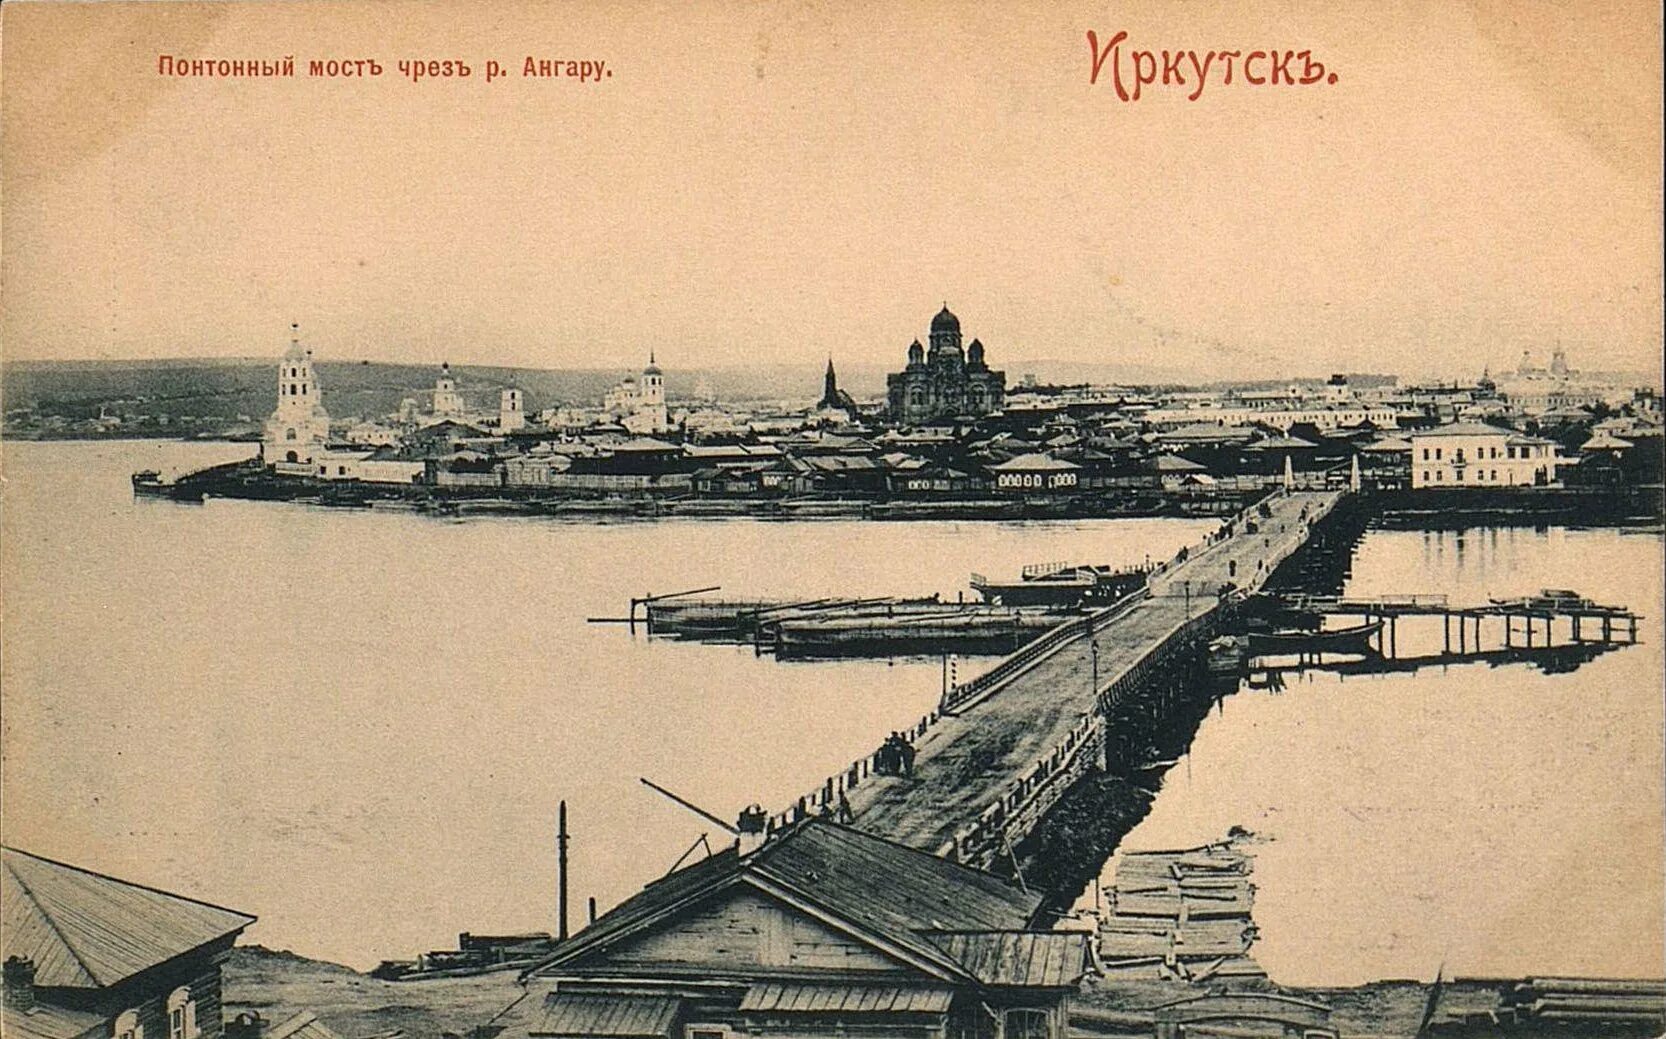 Основание иркутска. Понтонный мост Иркутск 19 век. Иркутск в 1661 году. Понтонный мост через Ангару Иркутск. Иркутск 18 век.